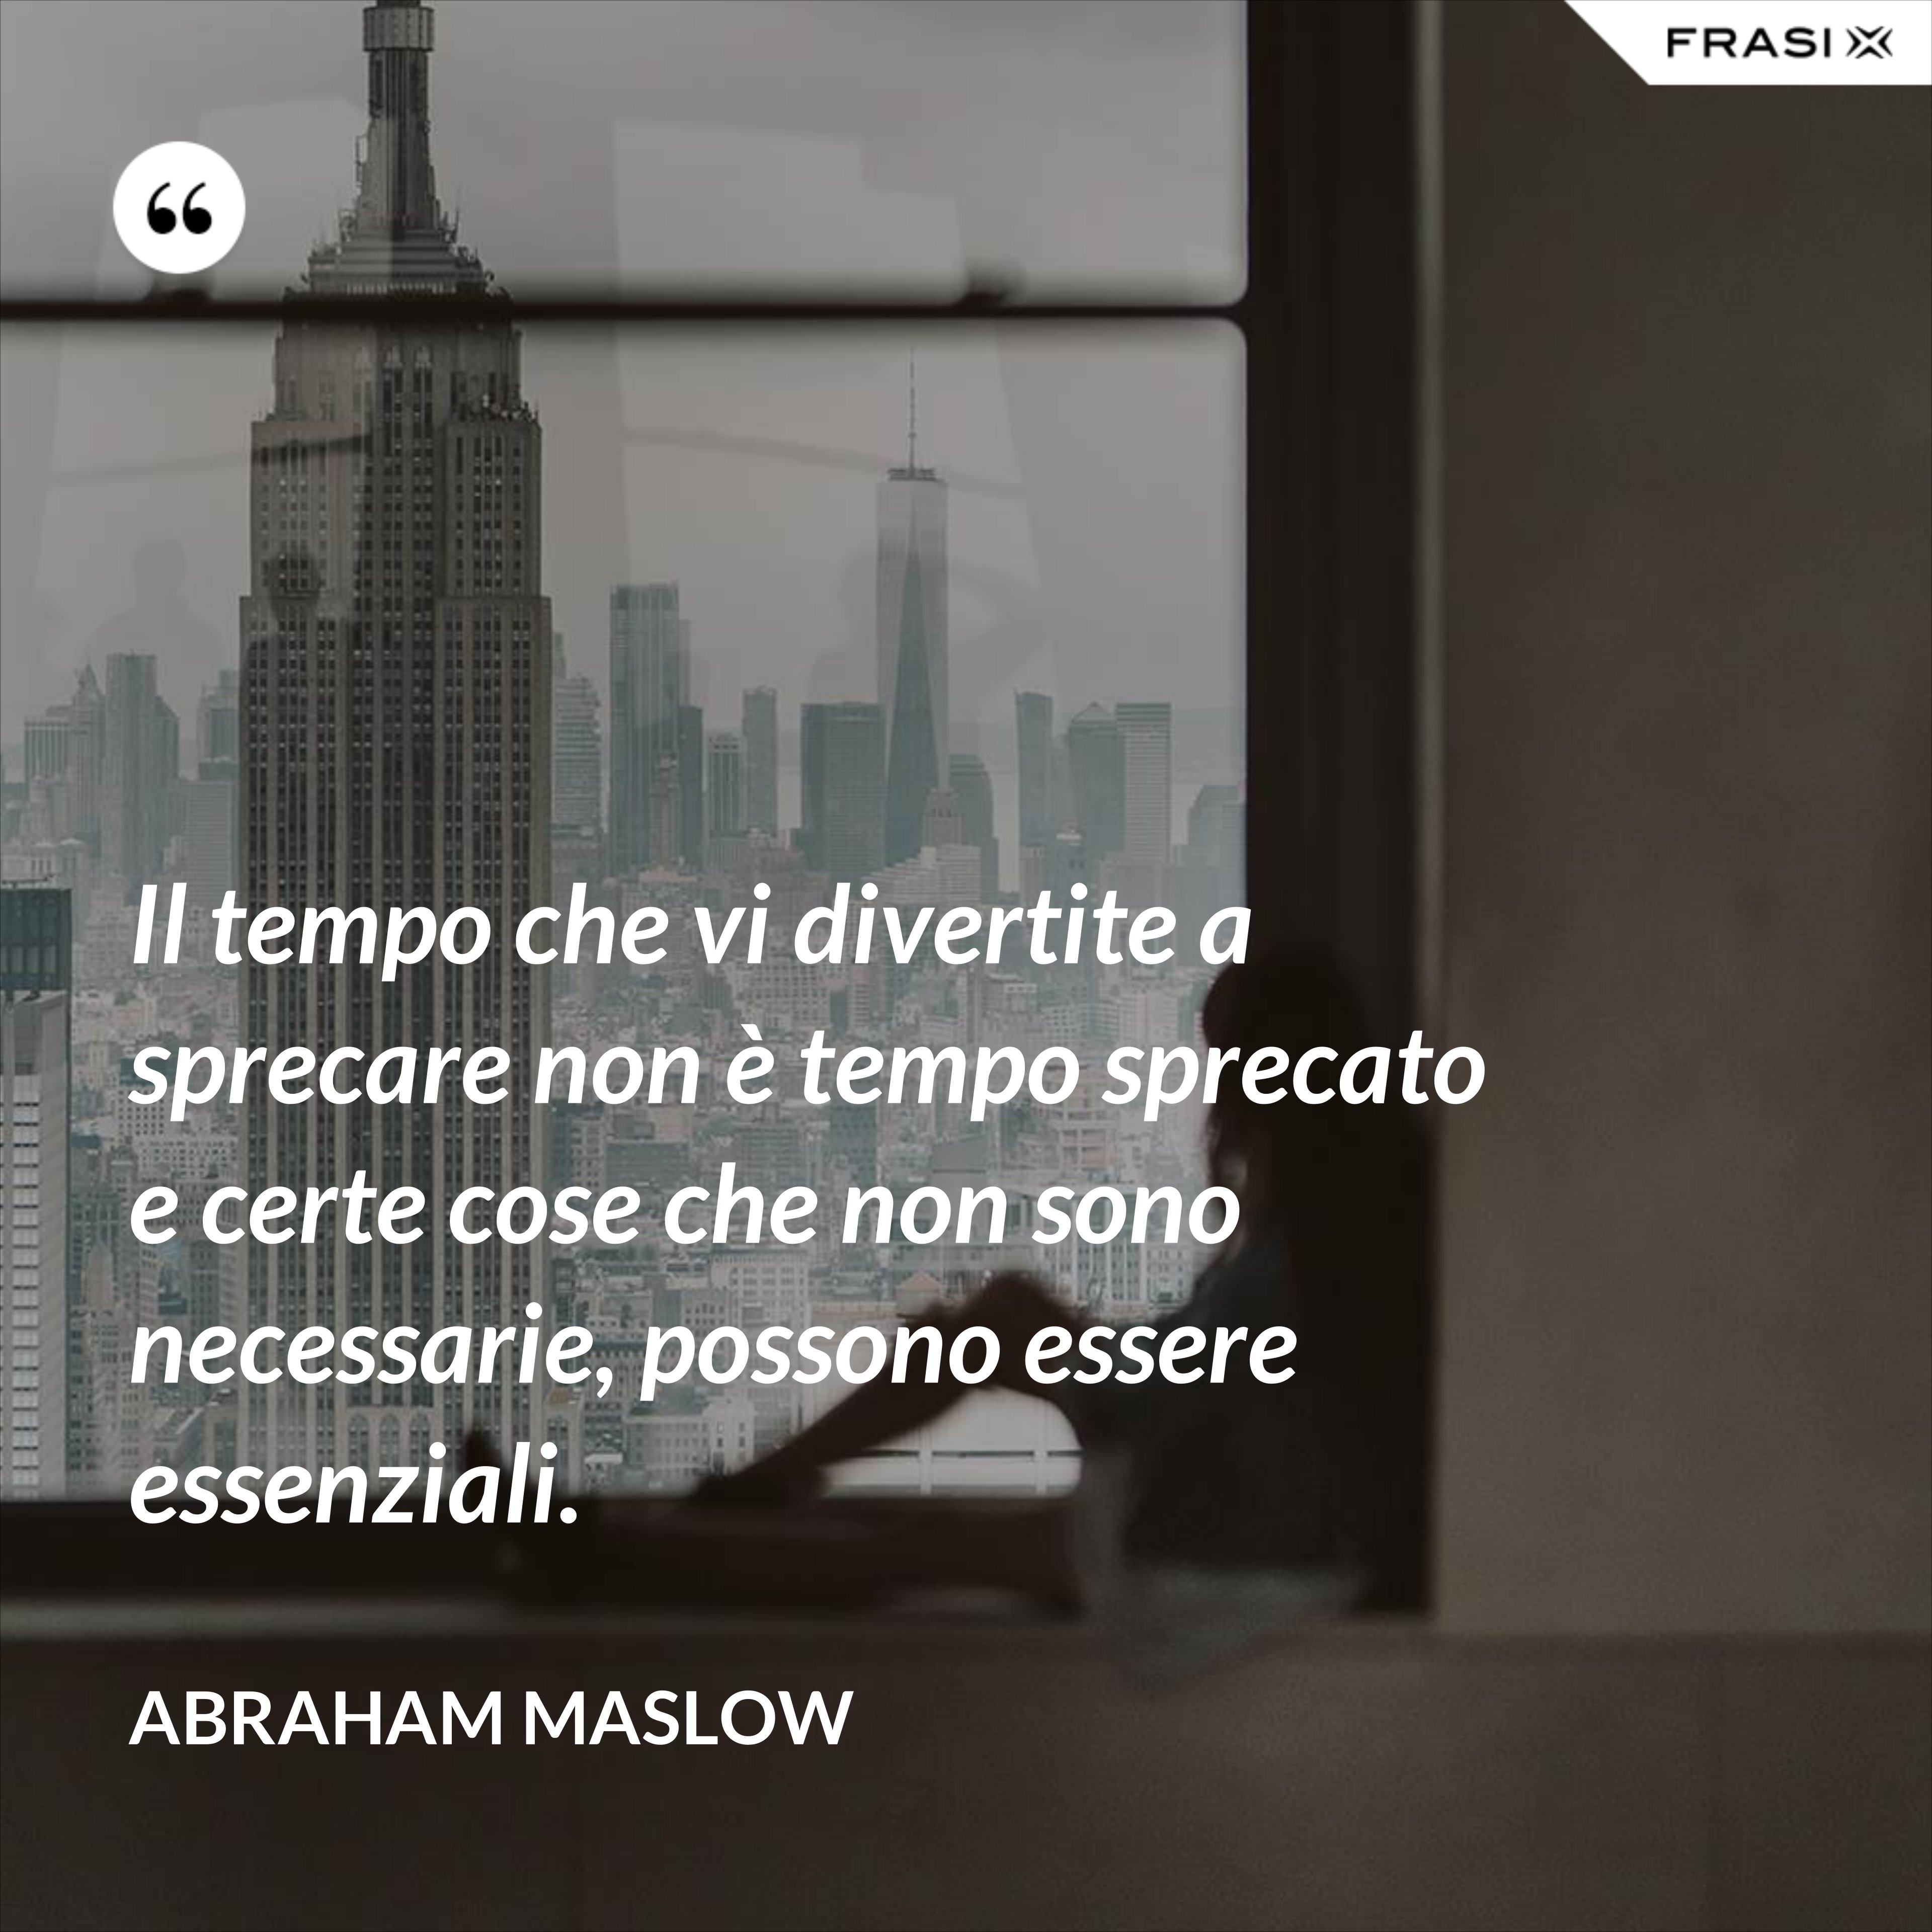 Il tempo che vi divertite a sprecare non è tempo sprecato e certe cose che non sono necessarie, possono essere essenziali. - Abraham Maslow